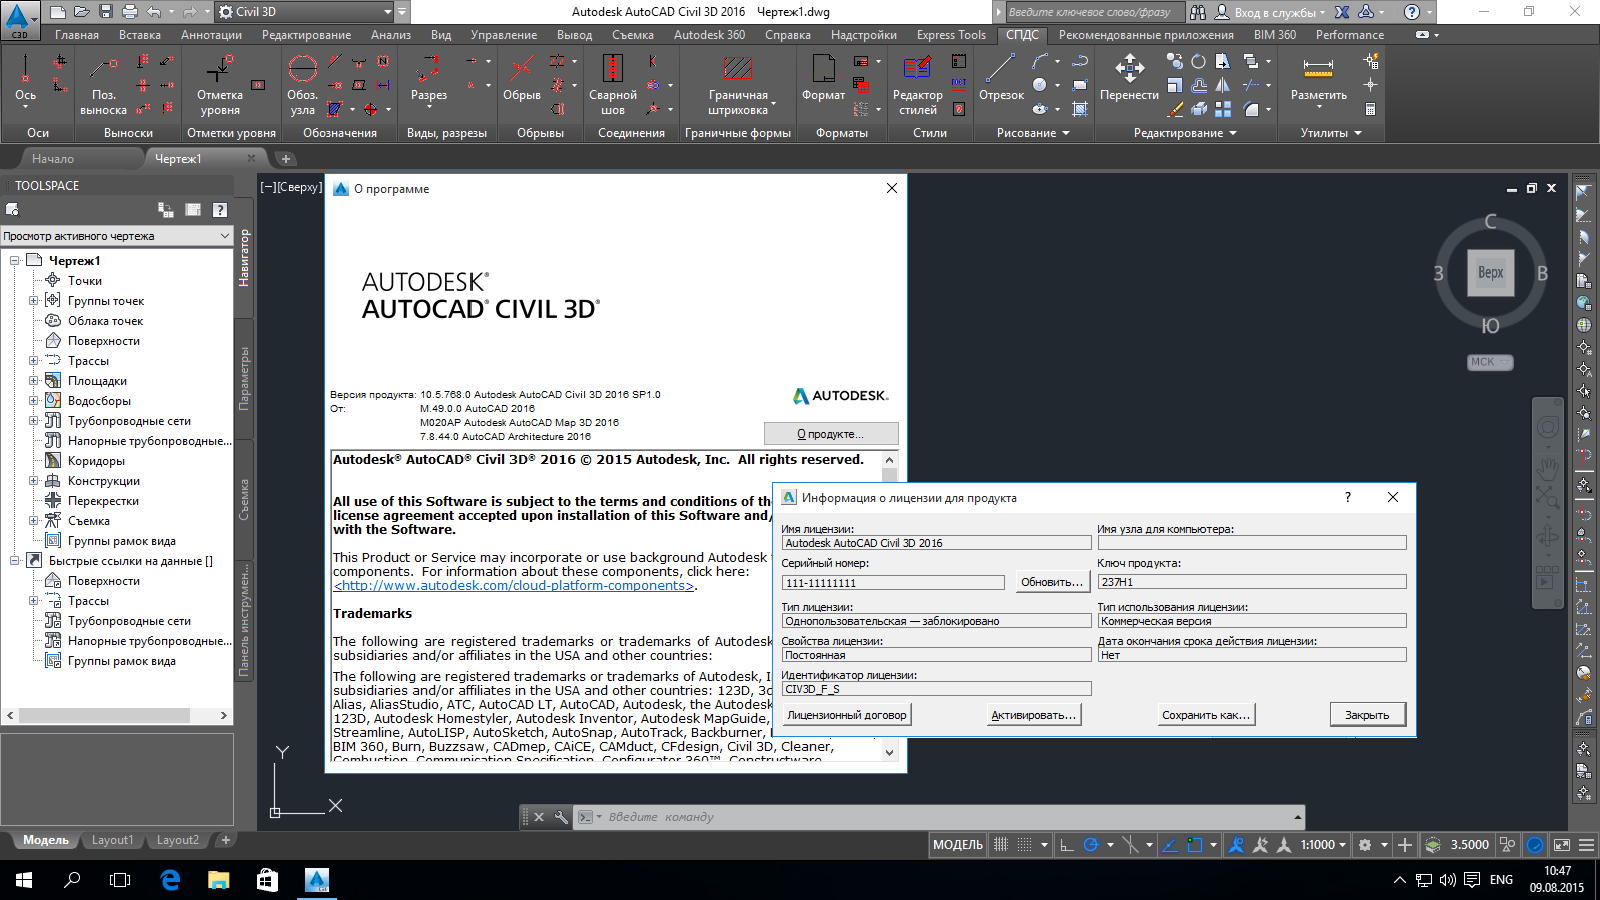 Autocad 2016 3d. Autodesk_AUTOCAD_2016_sp1. Автокад цивил 3 д лицензия. Лицензия в автокаде. Разрешение AUTOCAD.